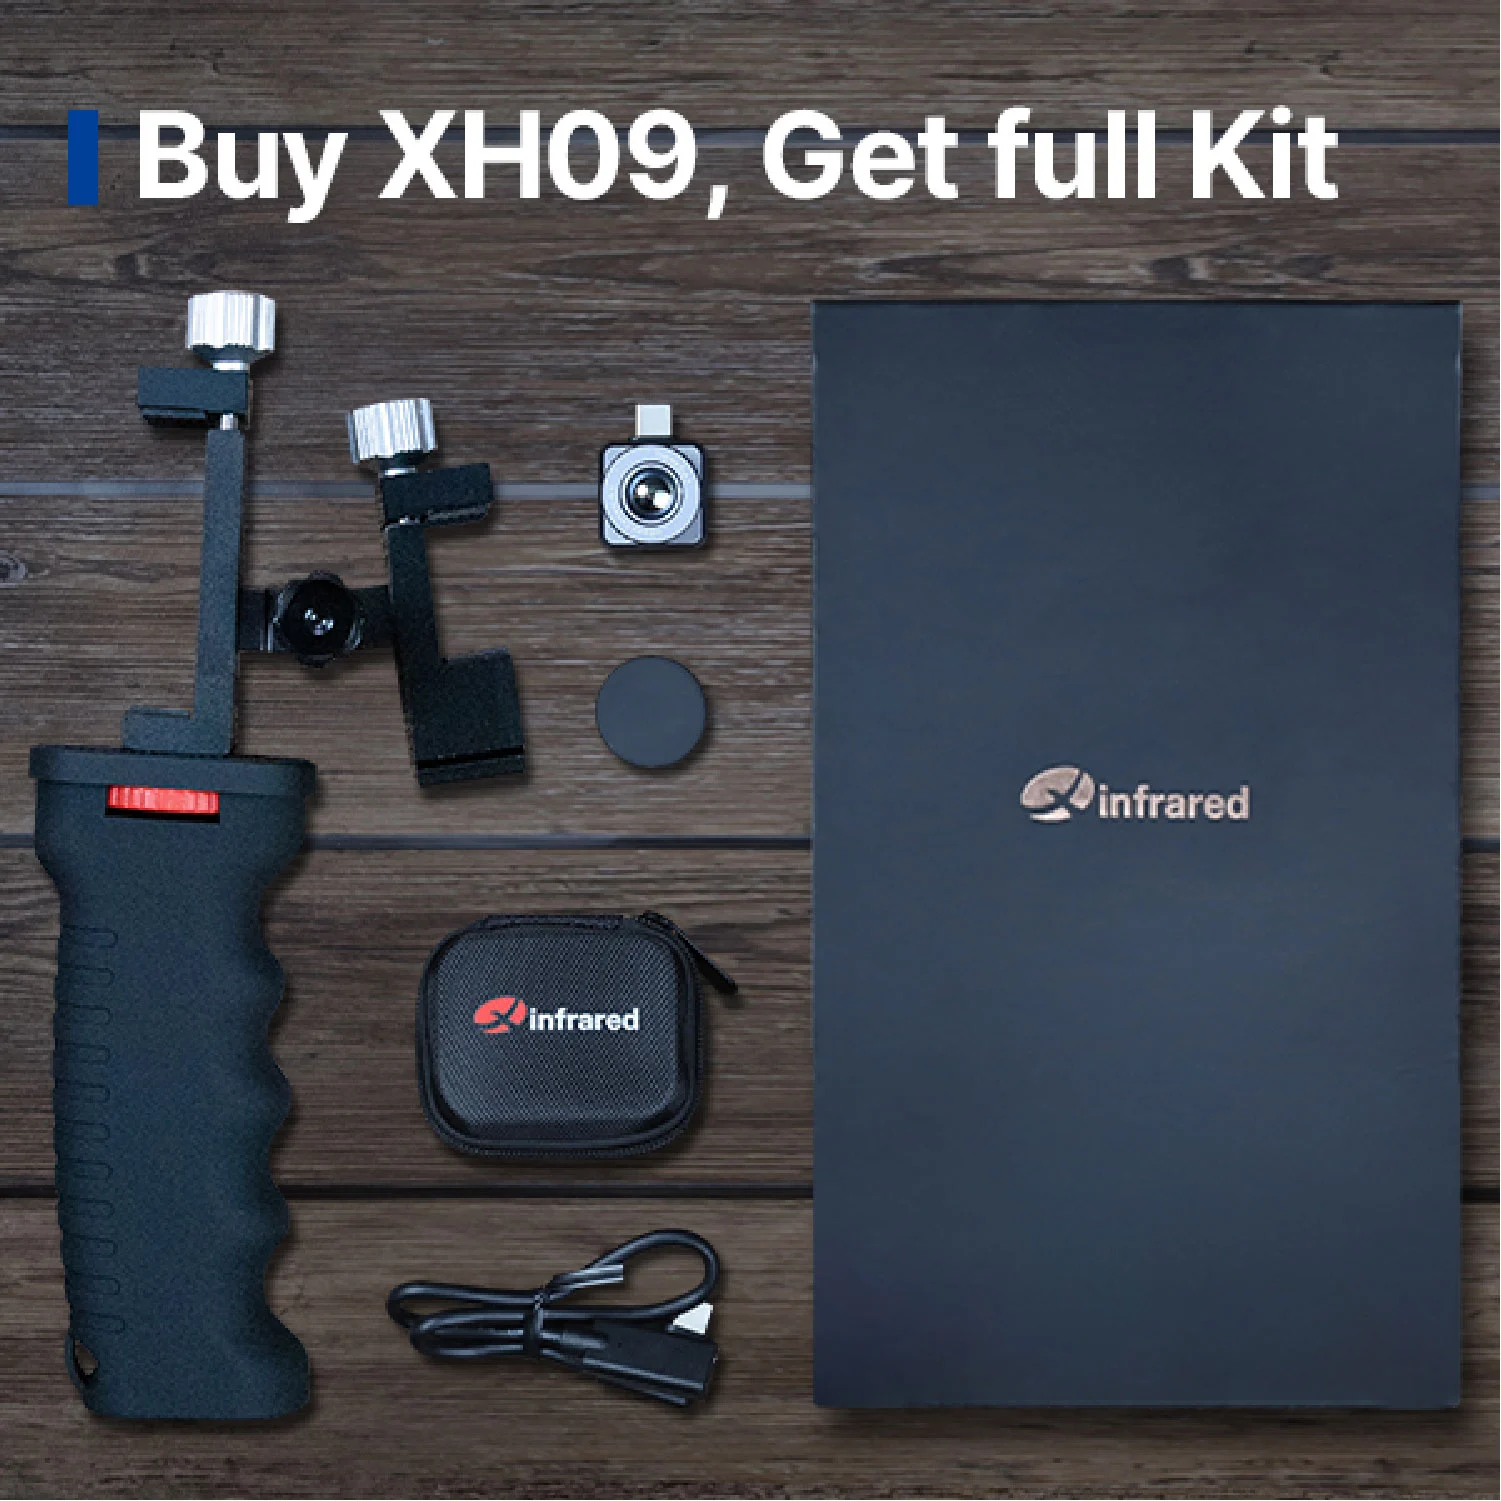 Buy XH09, Get full Kit